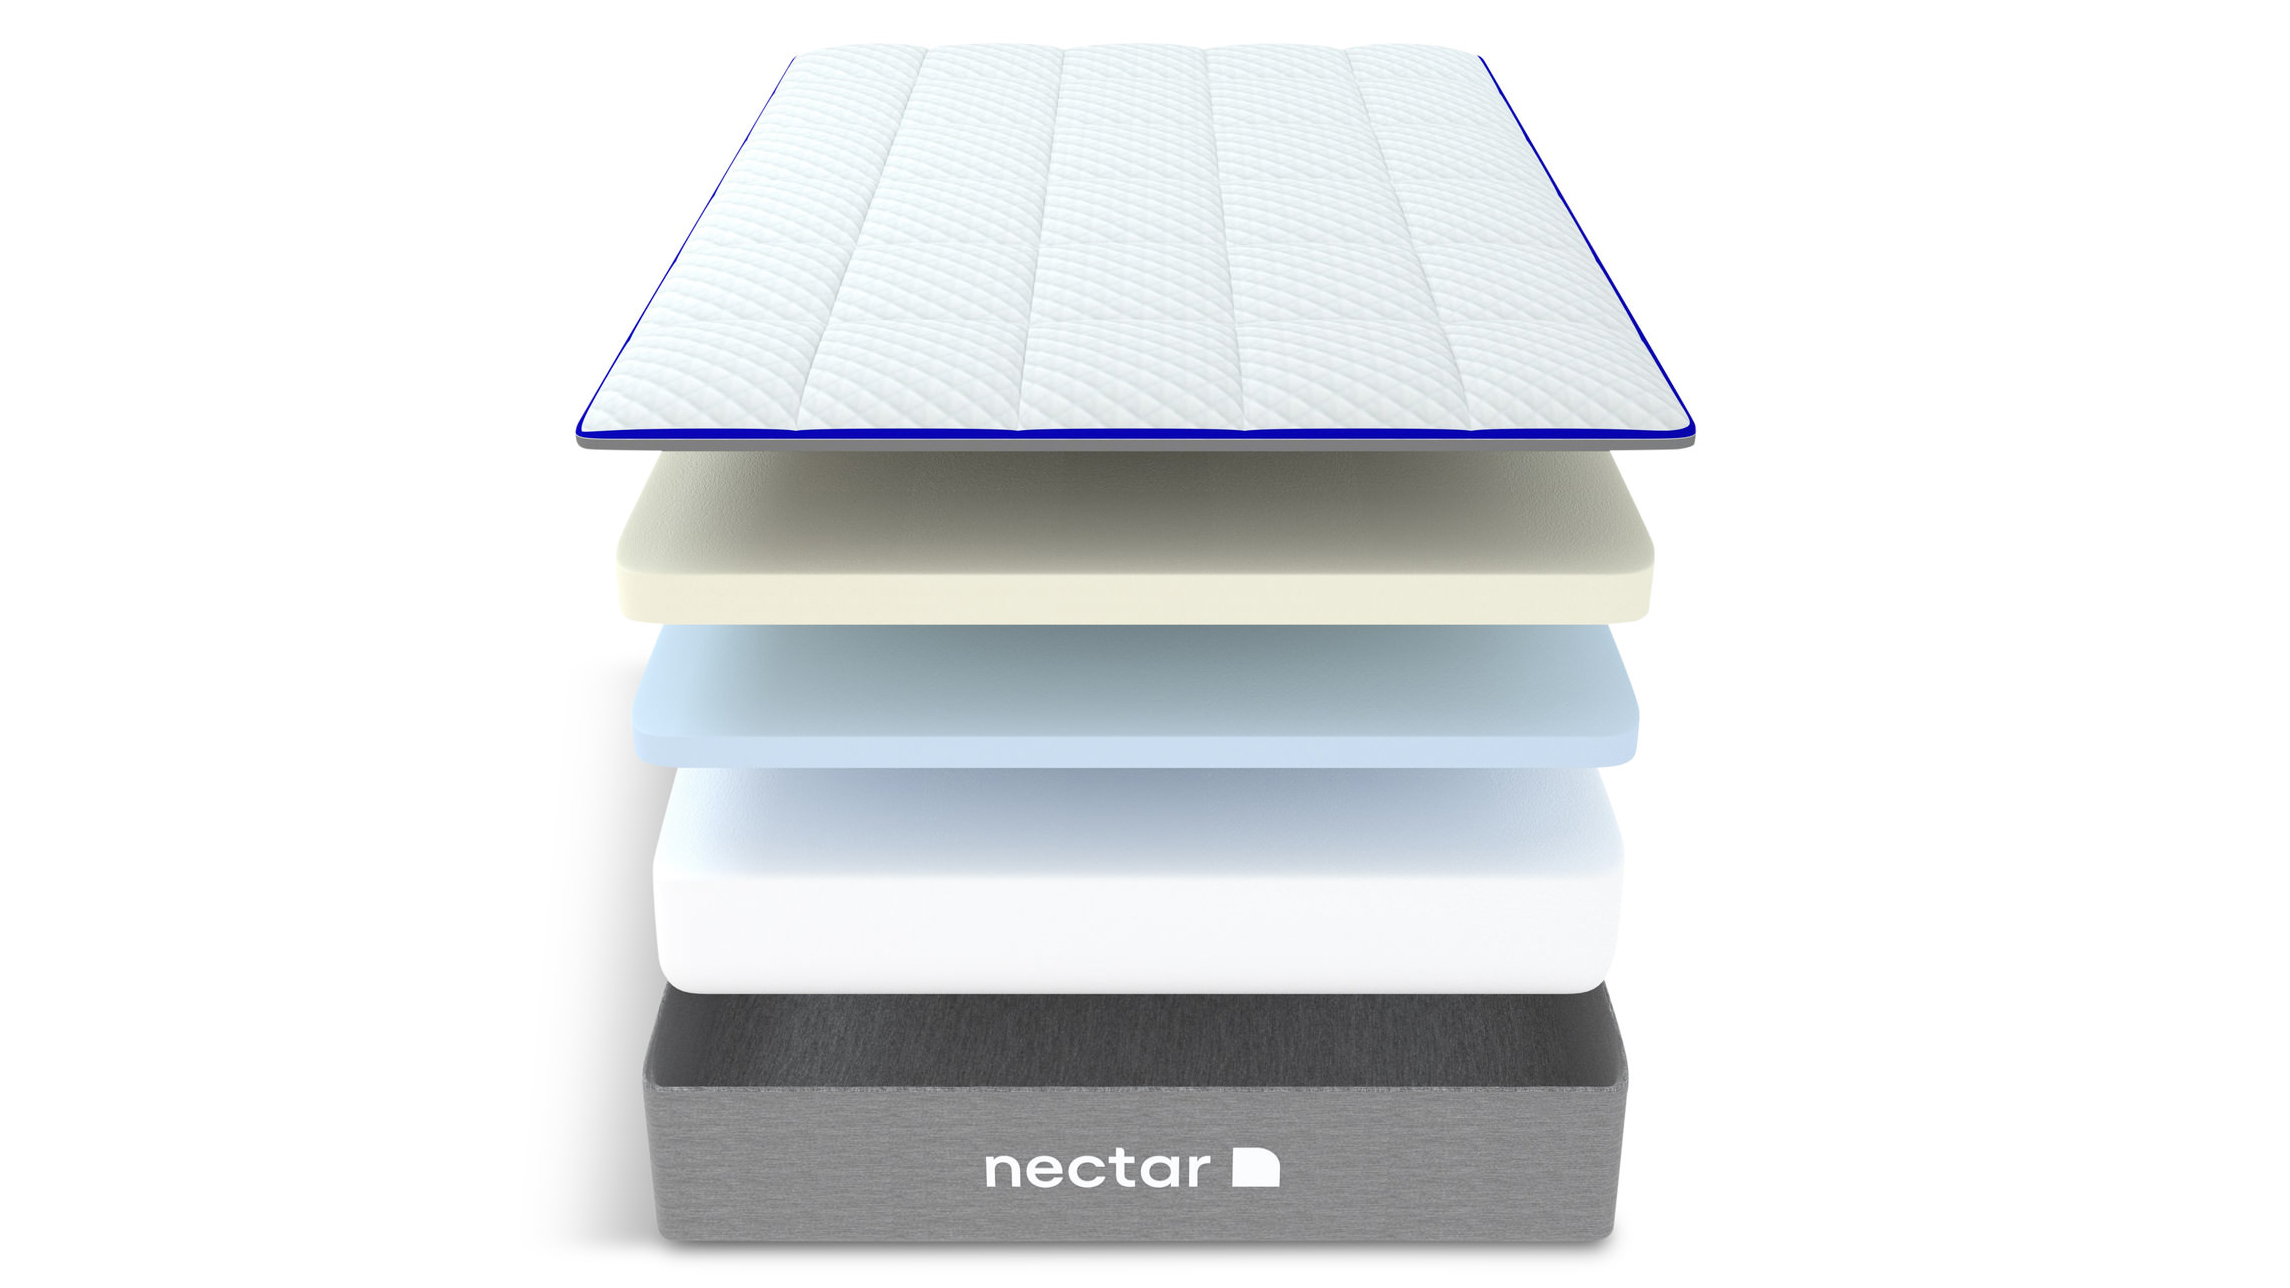 nectar memory foam mattress